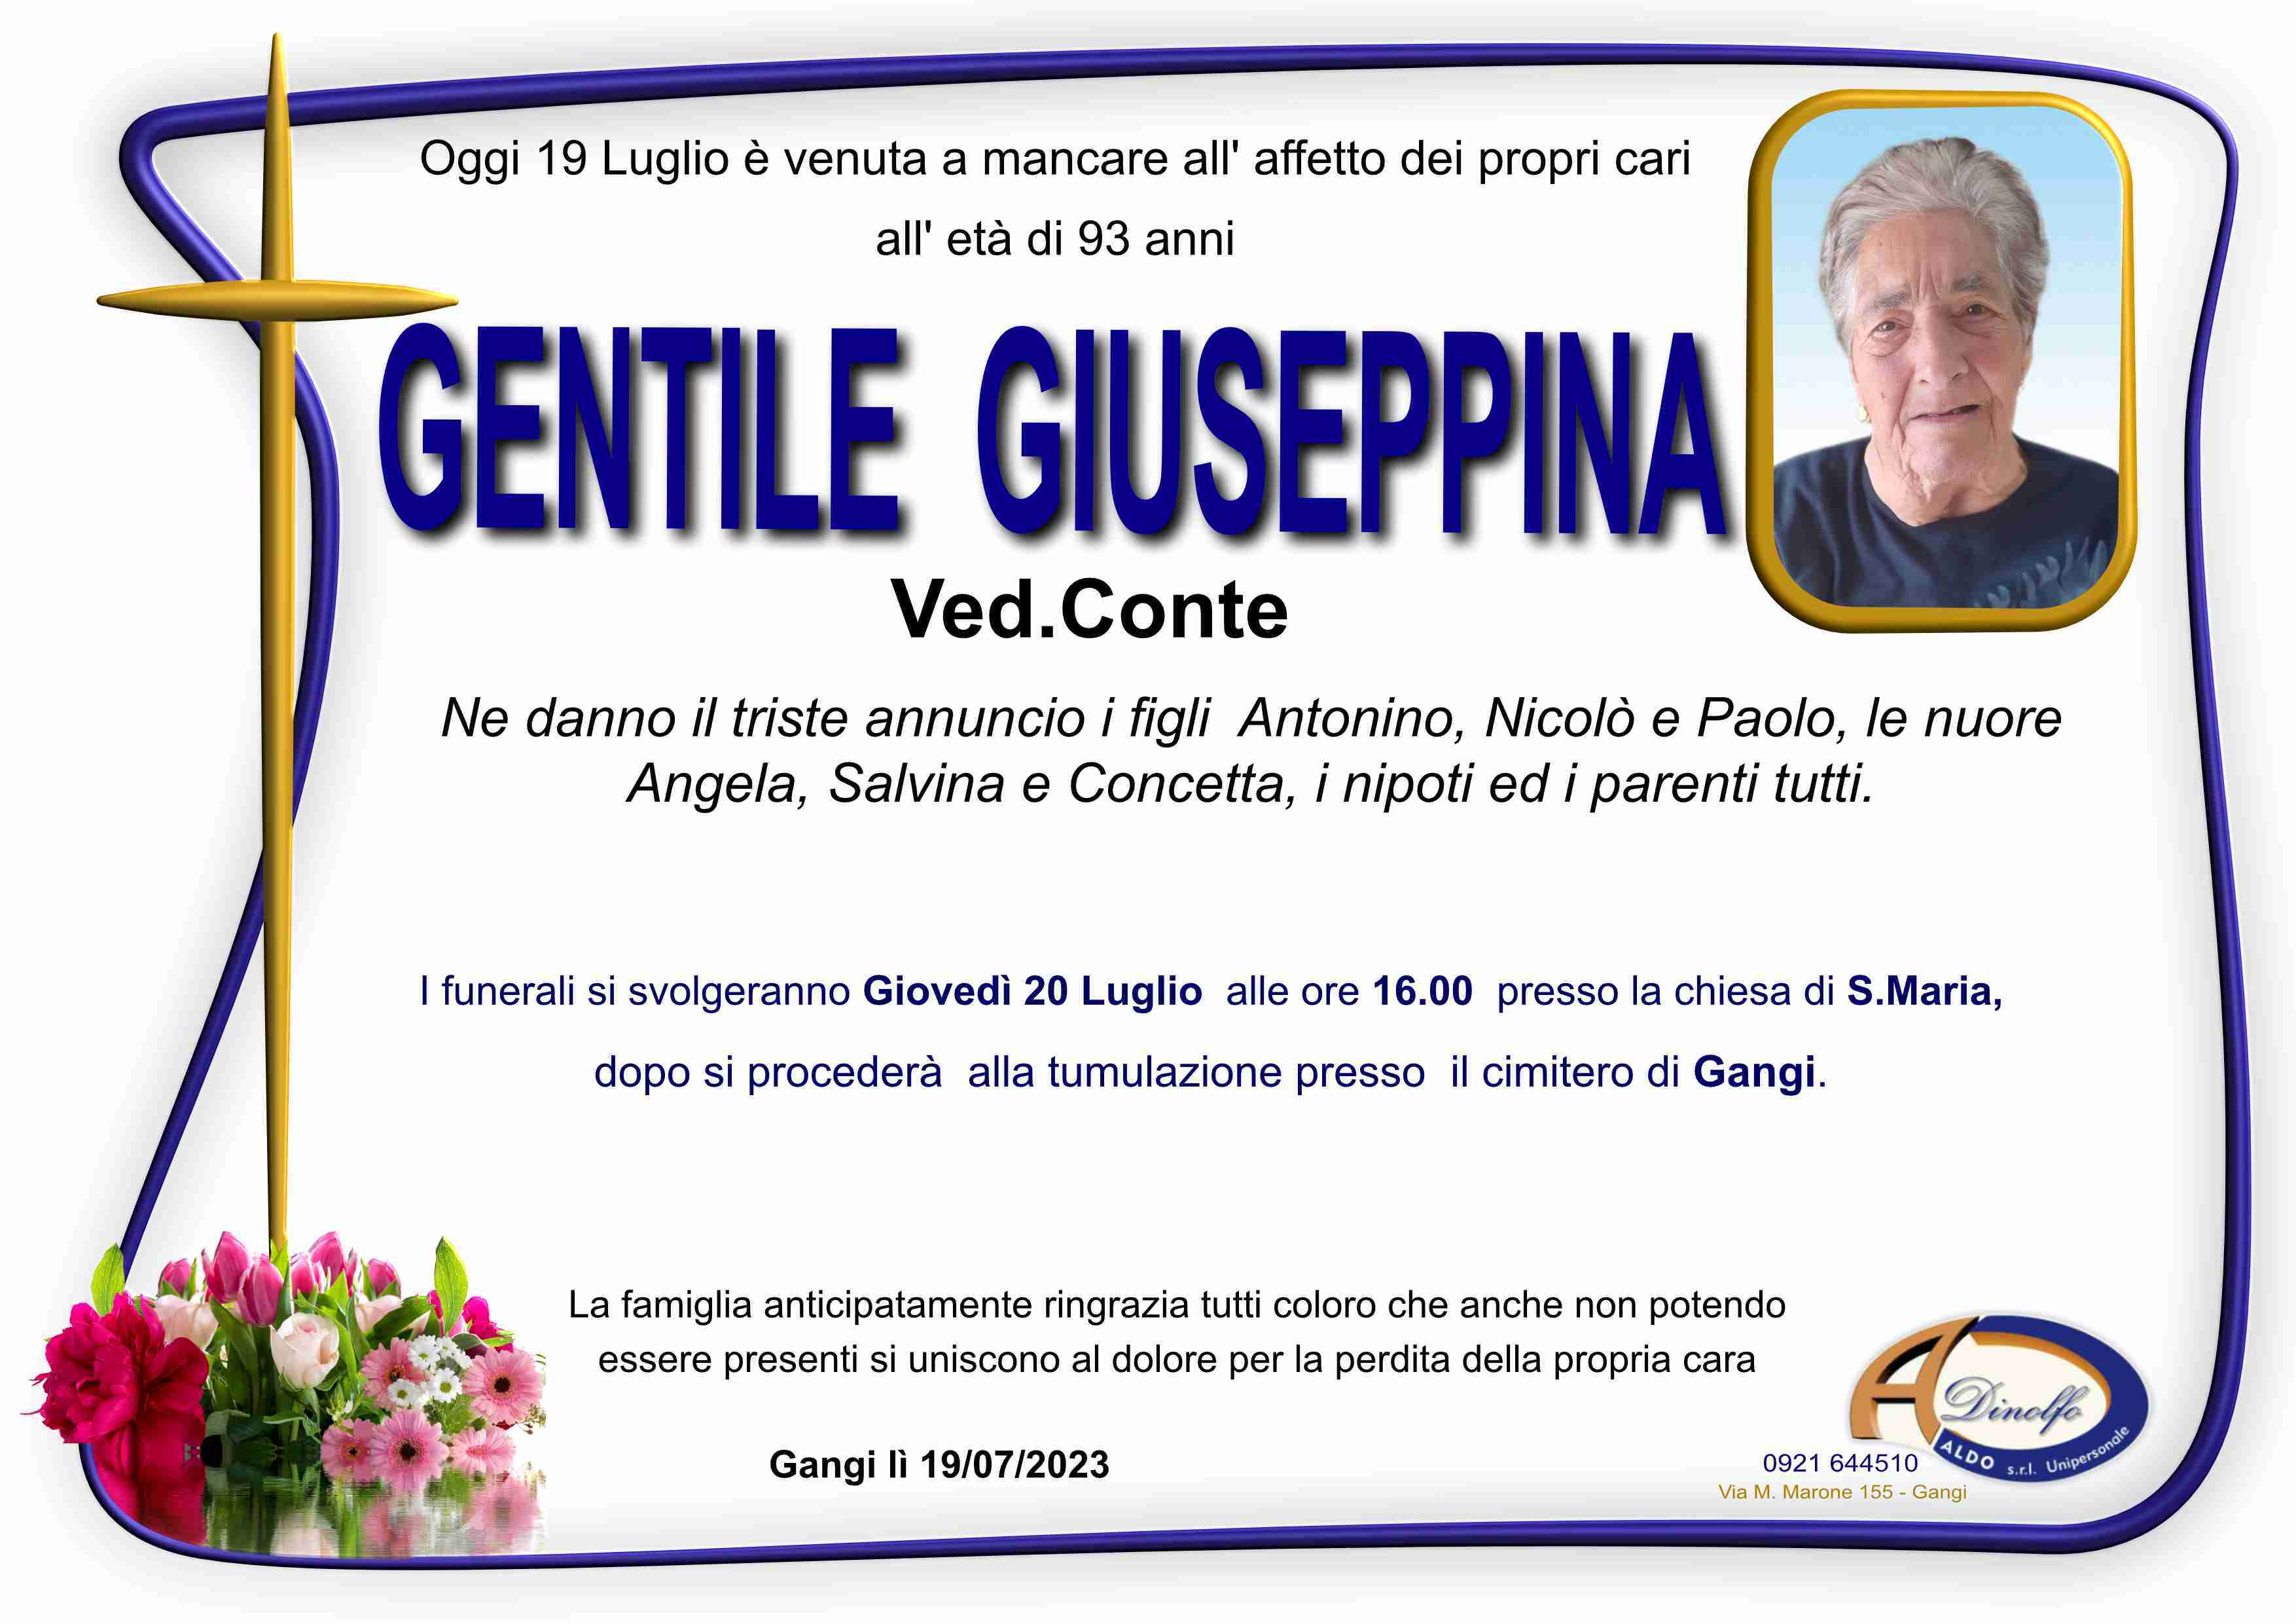 Giuseppina Gentile